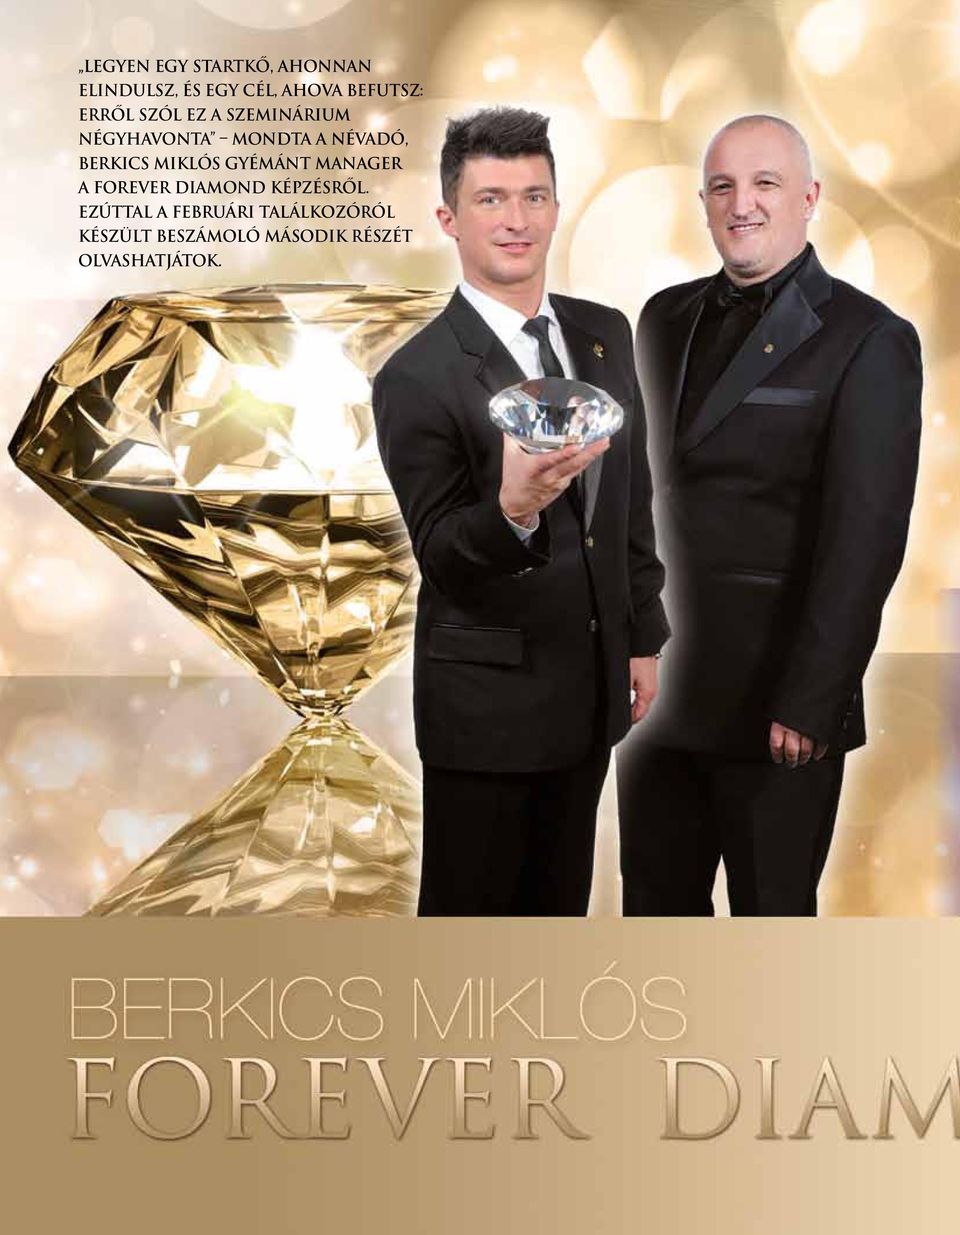 Miklós Gyémánt Manager a Forever Diamond Képzésről.